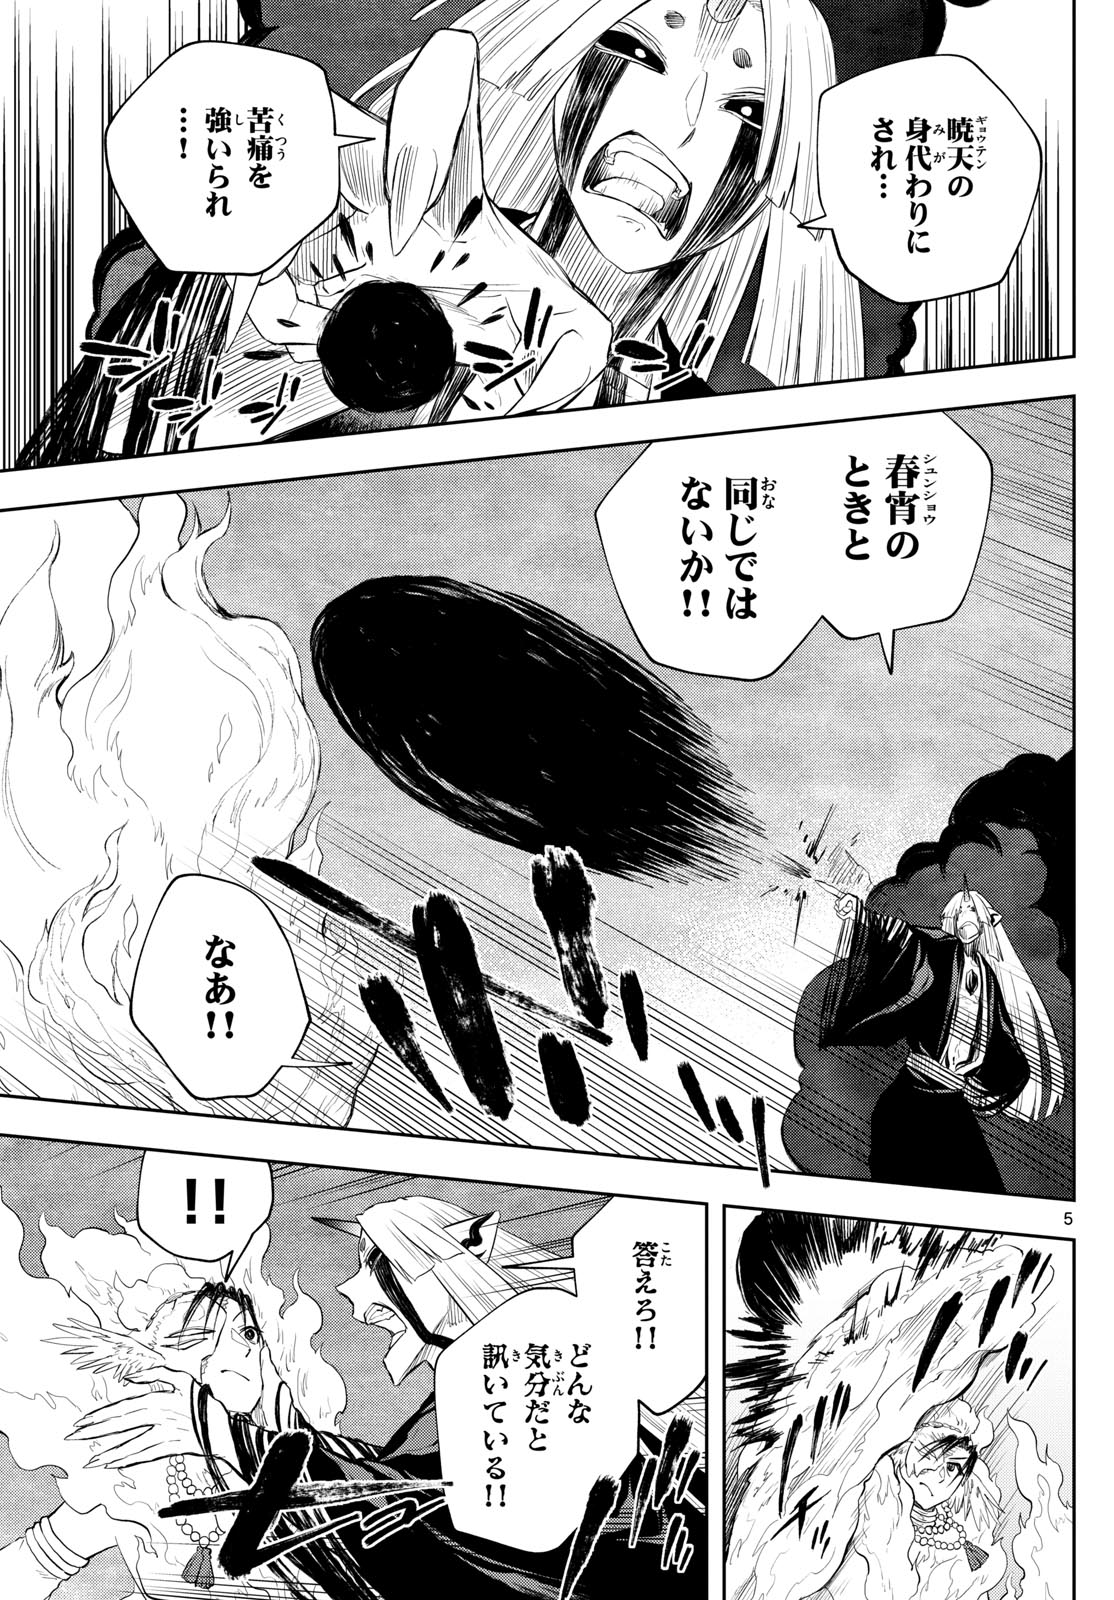 Akatsuki Jihen - Chapter 45 - Page 5